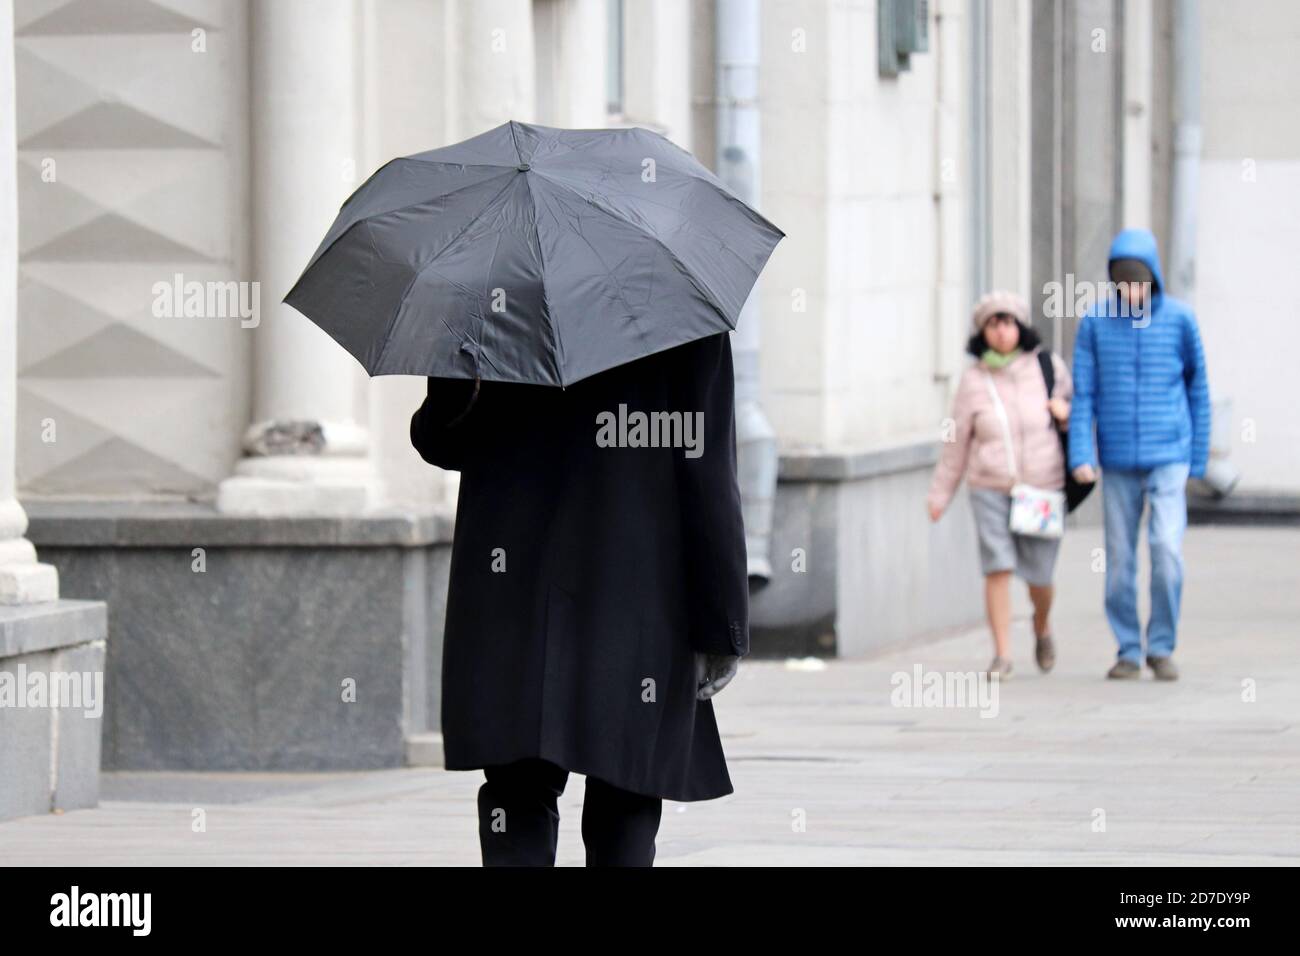 Pioggia in città, uomo in camice autunnale con ombrello nero che cammina su una strada. Persone in tempo piovoso, stagione autunnale Foto Stock